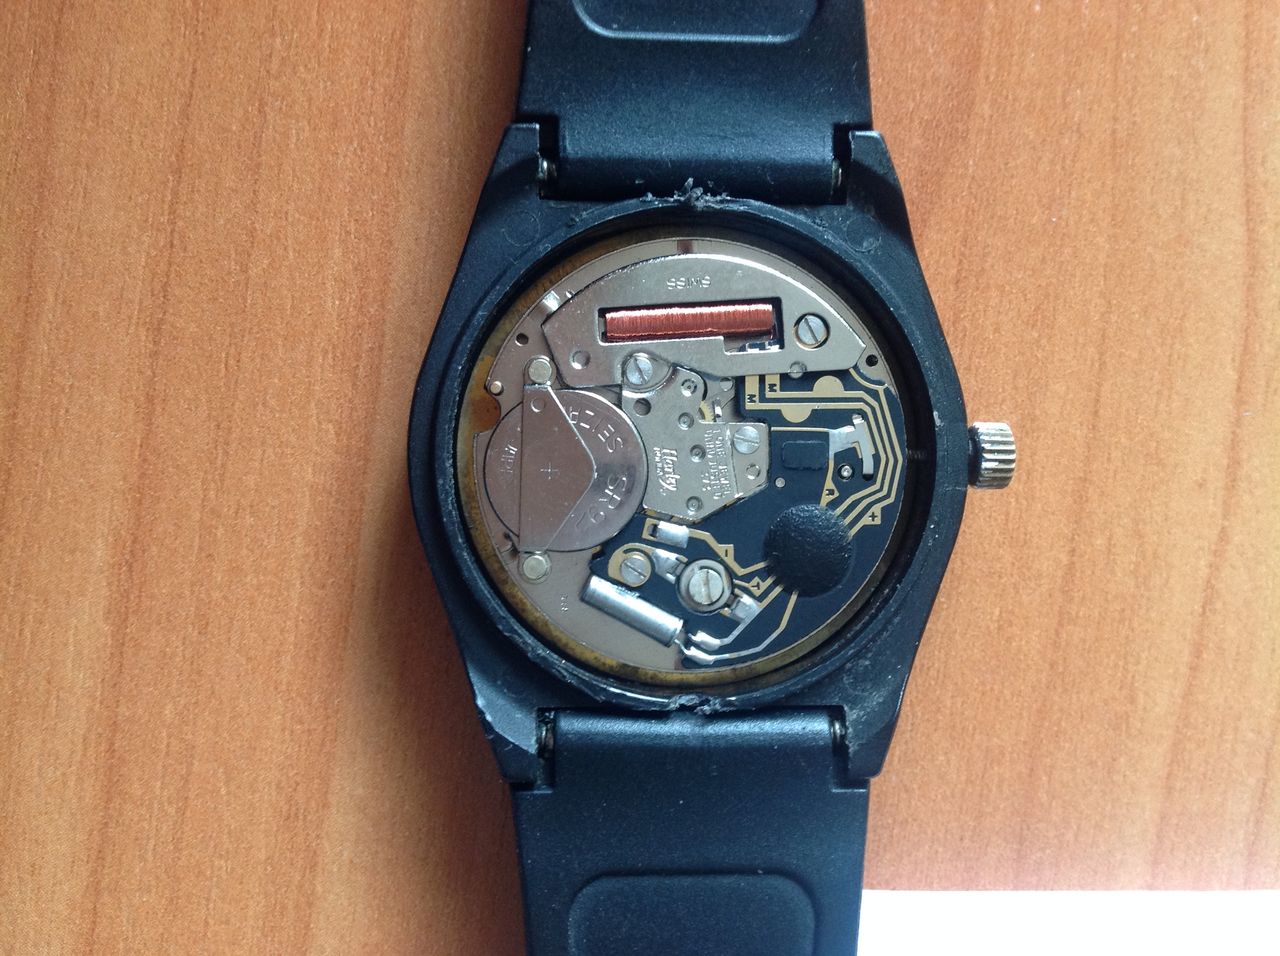 Ten cienkiutki, miedziany drucik wymagał lutowania. W zegarku użyto mechanizmu Harley Ronda 373.